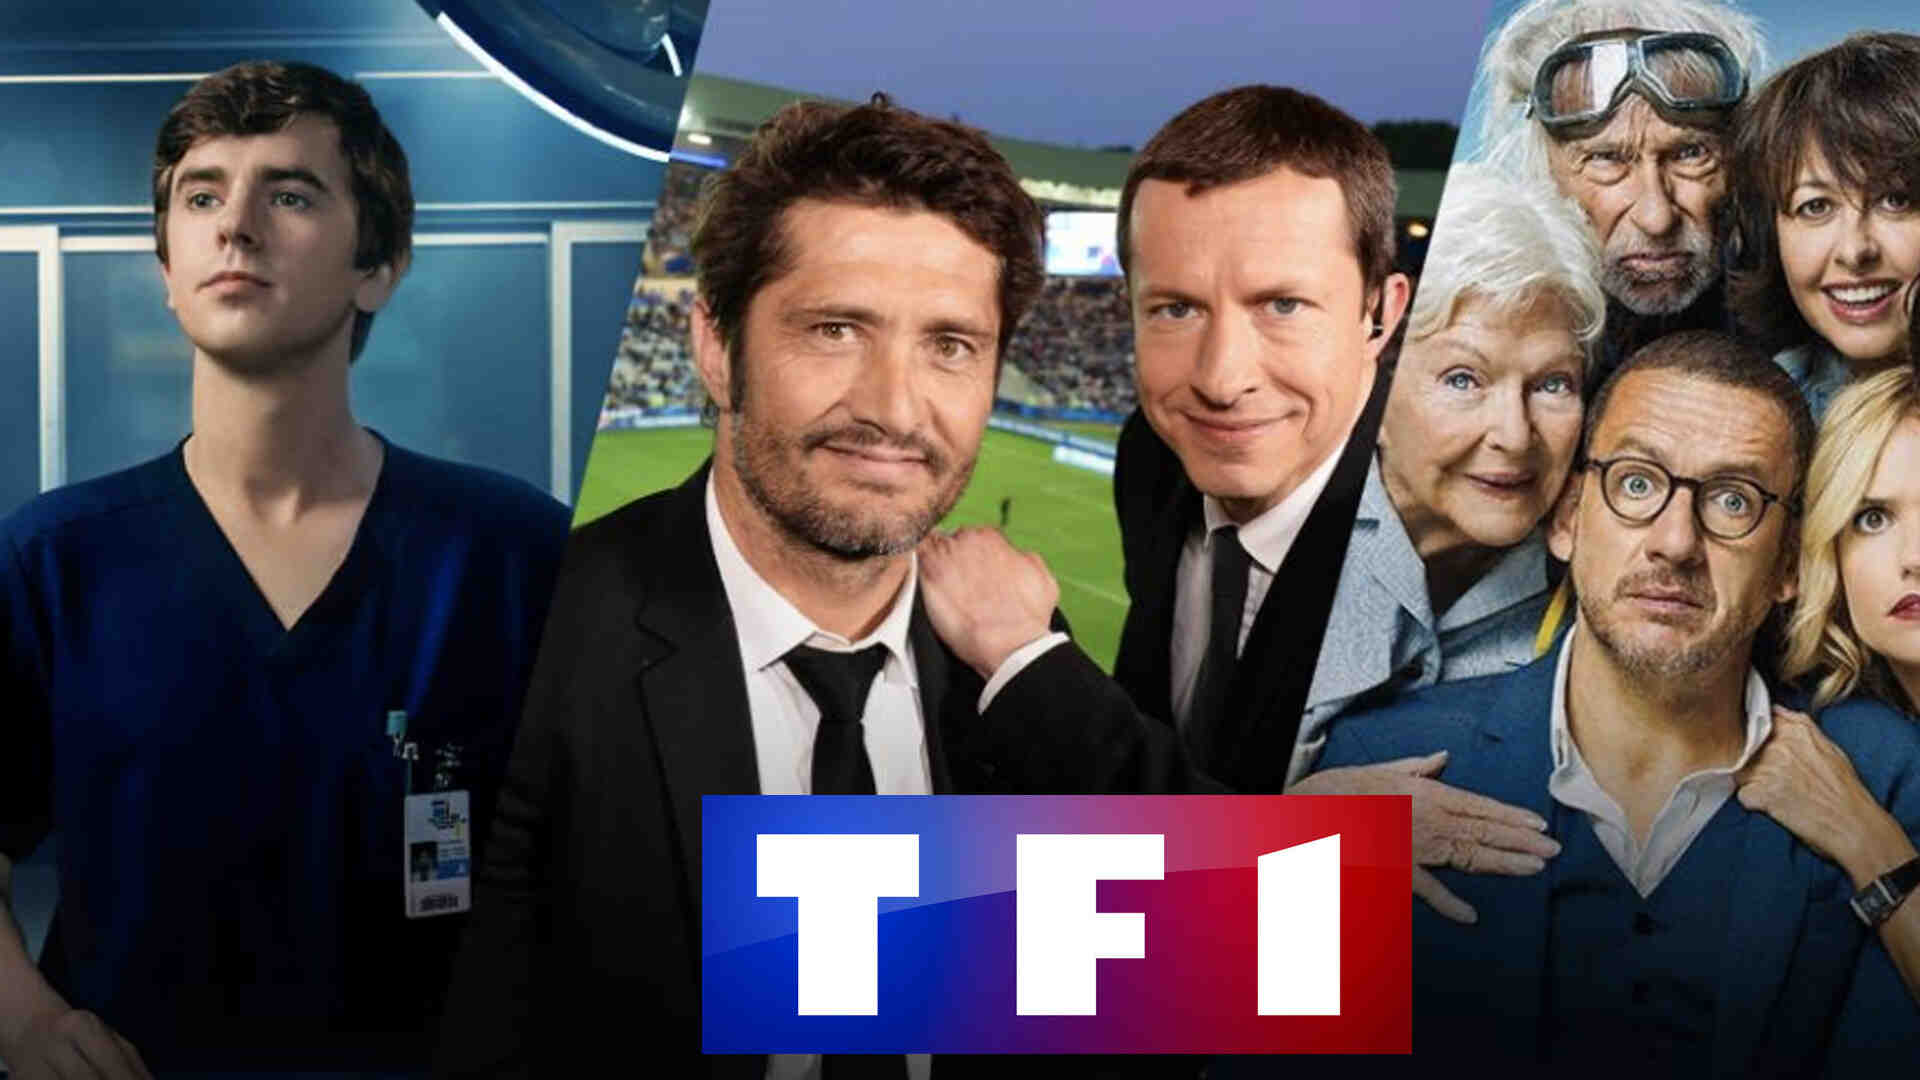 Comment regarder TF1 en direct sur pc gratuitement sans inscription ?